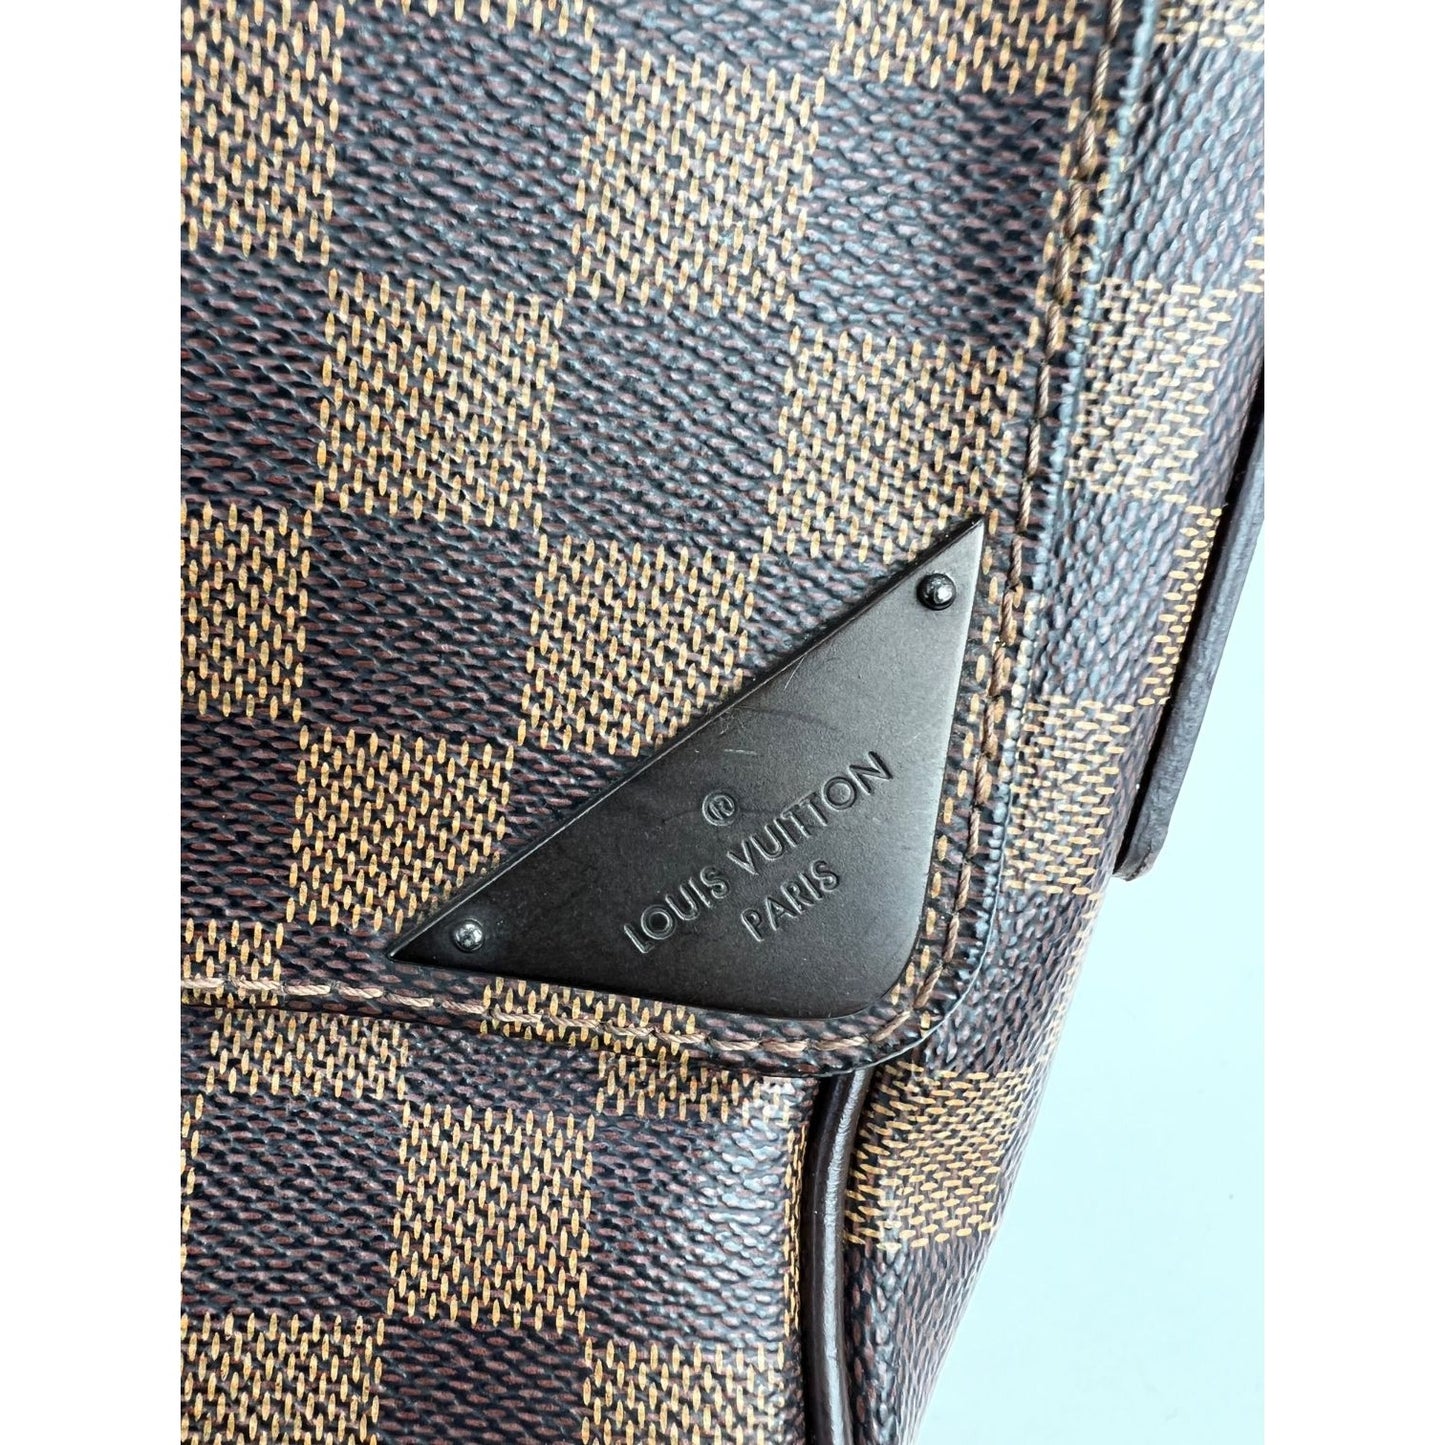 Louis Vuitton Damier Ebene Broadway Messegner Briefcase Attache 860286